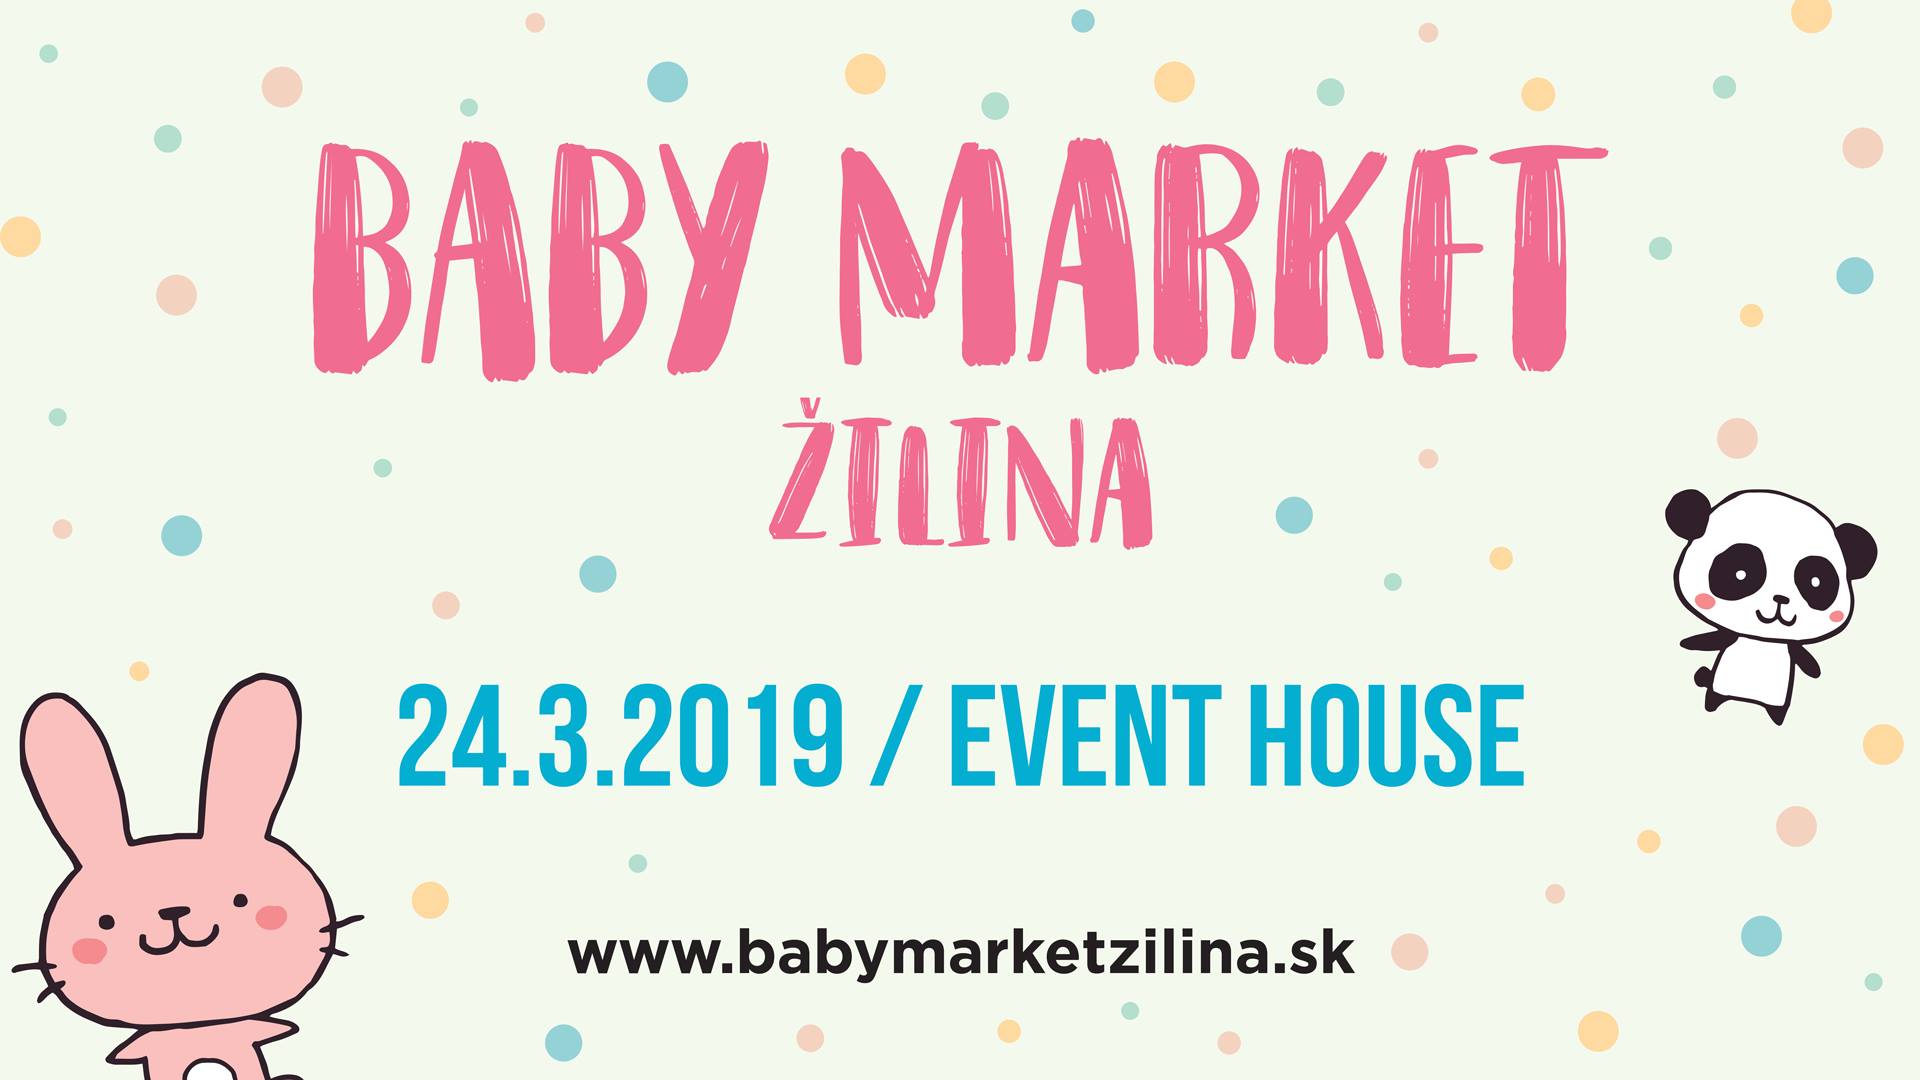 Baby market ilina 2019 - 1. ronk